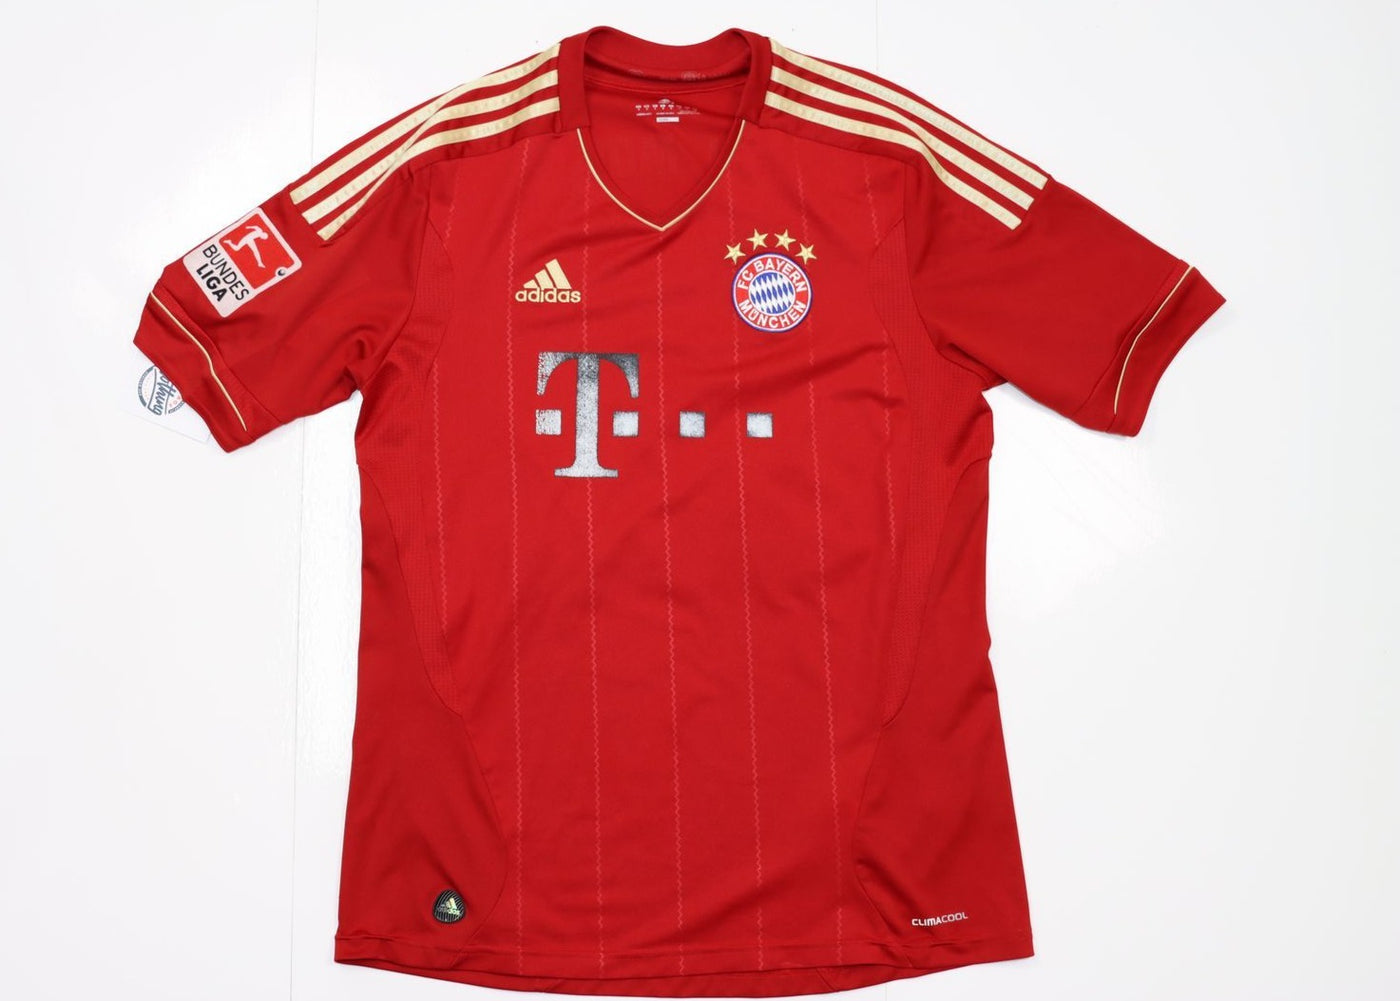 Maglia da calcio Adidas Bayern Munich 2012/2013 Schweinsteiger 31 Taglia M